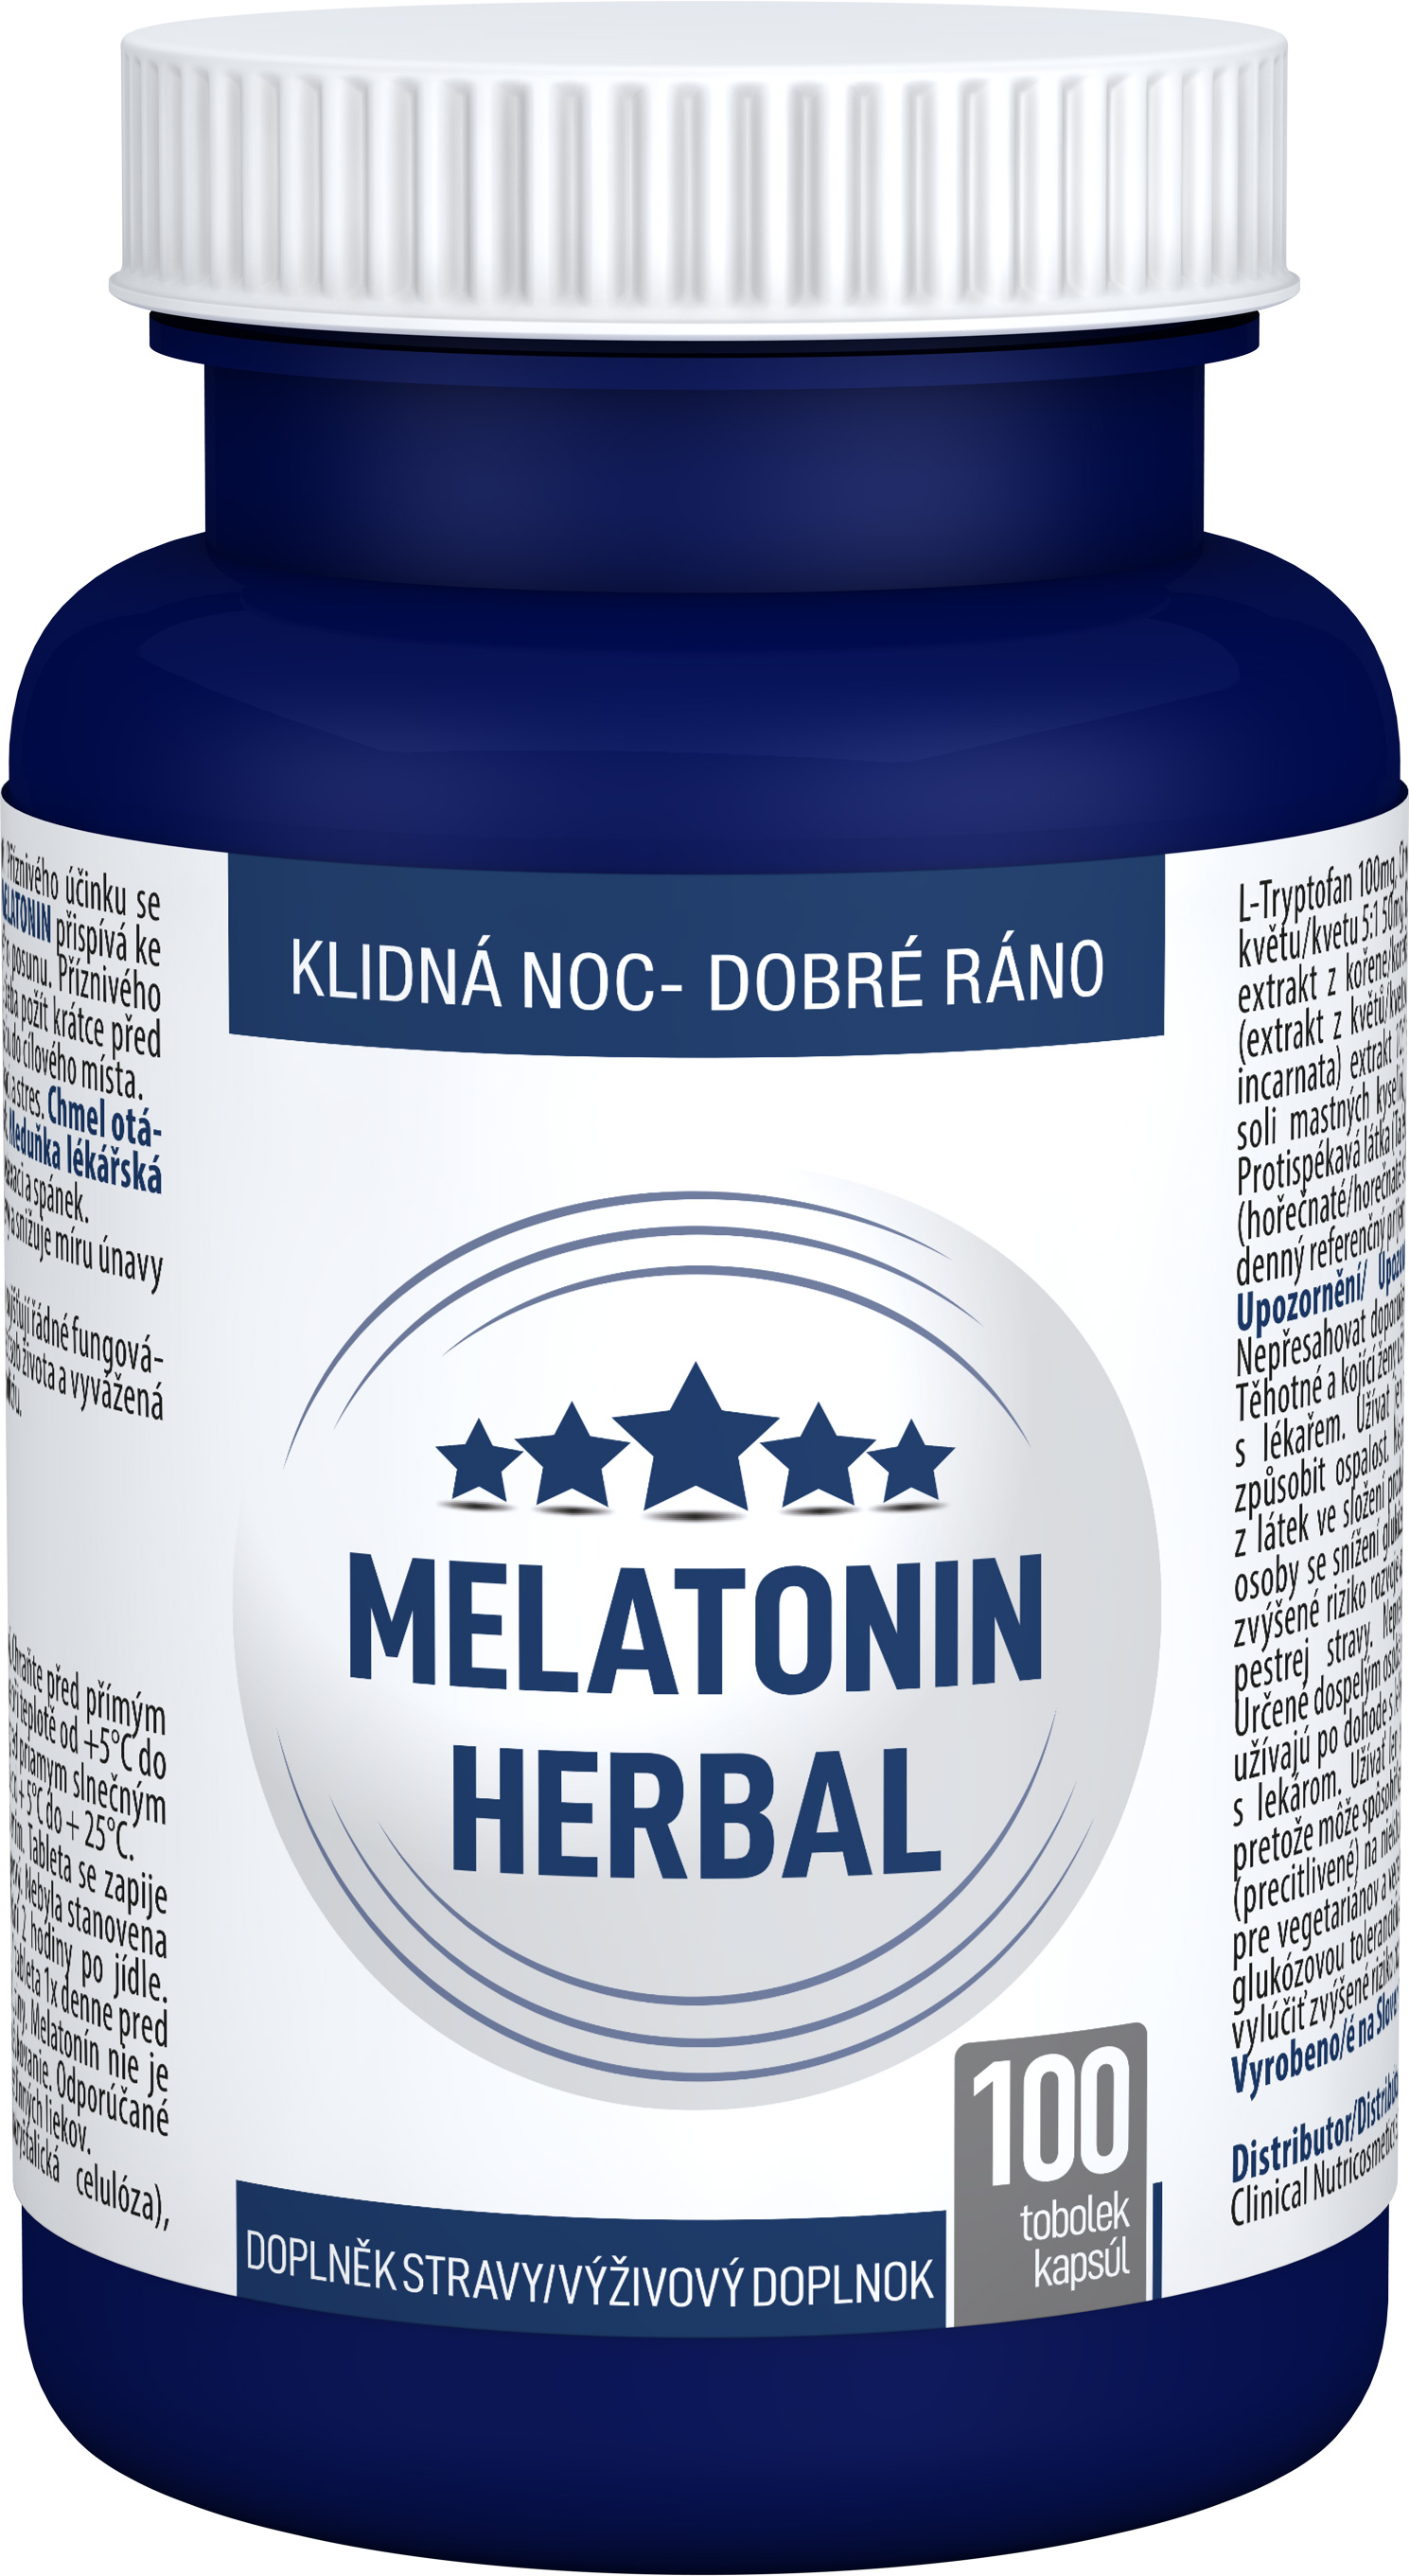 Clinical Melatonin Herbal 100 tbl.